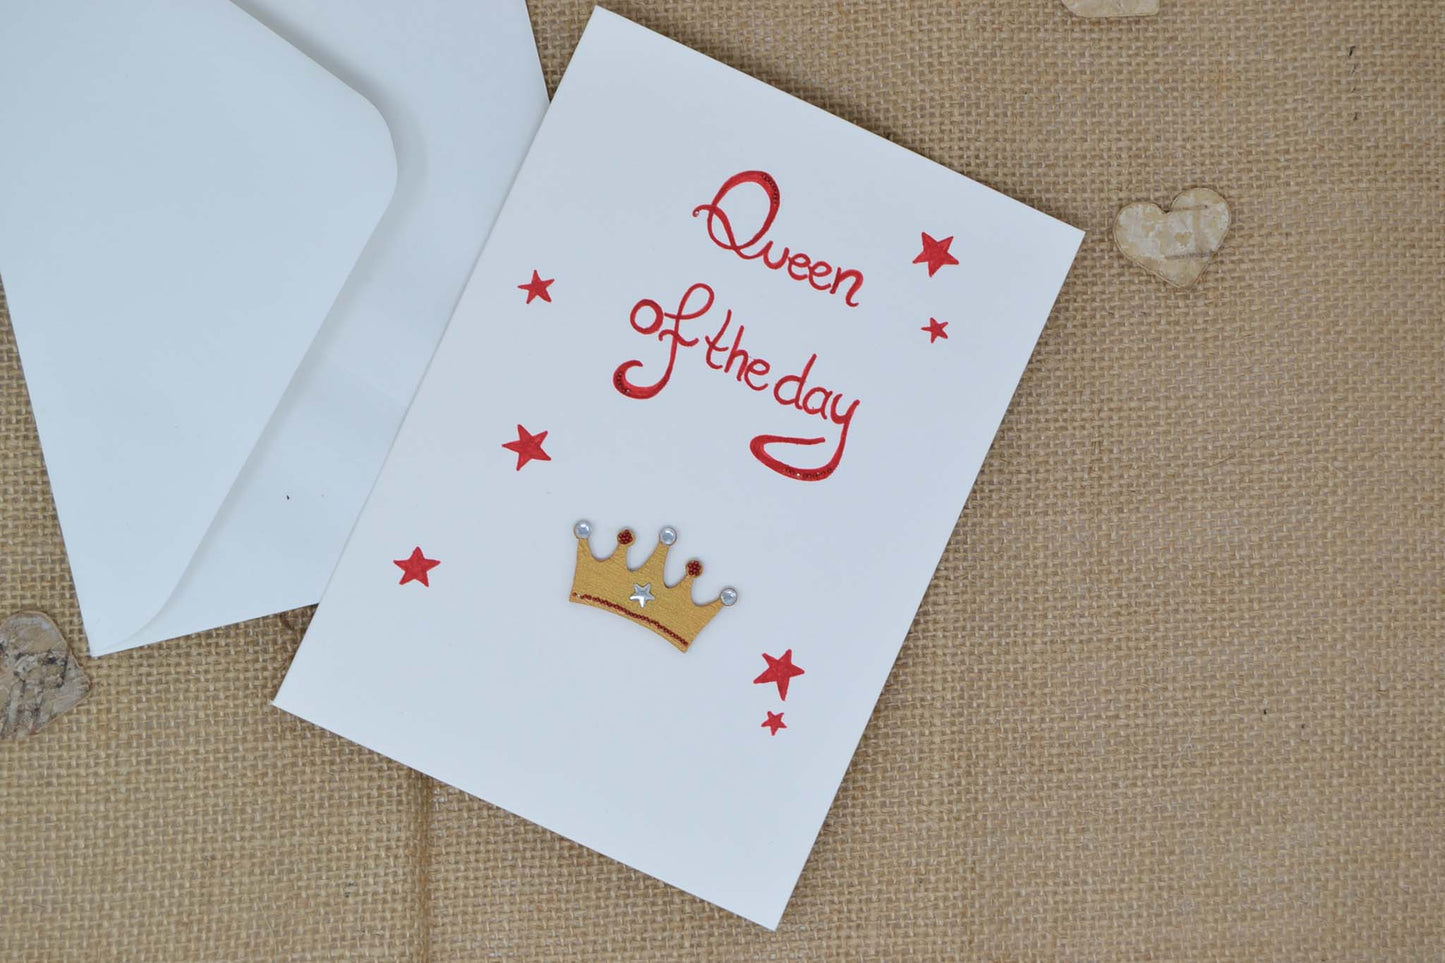 Geburtstagskarte "Queen of the day"